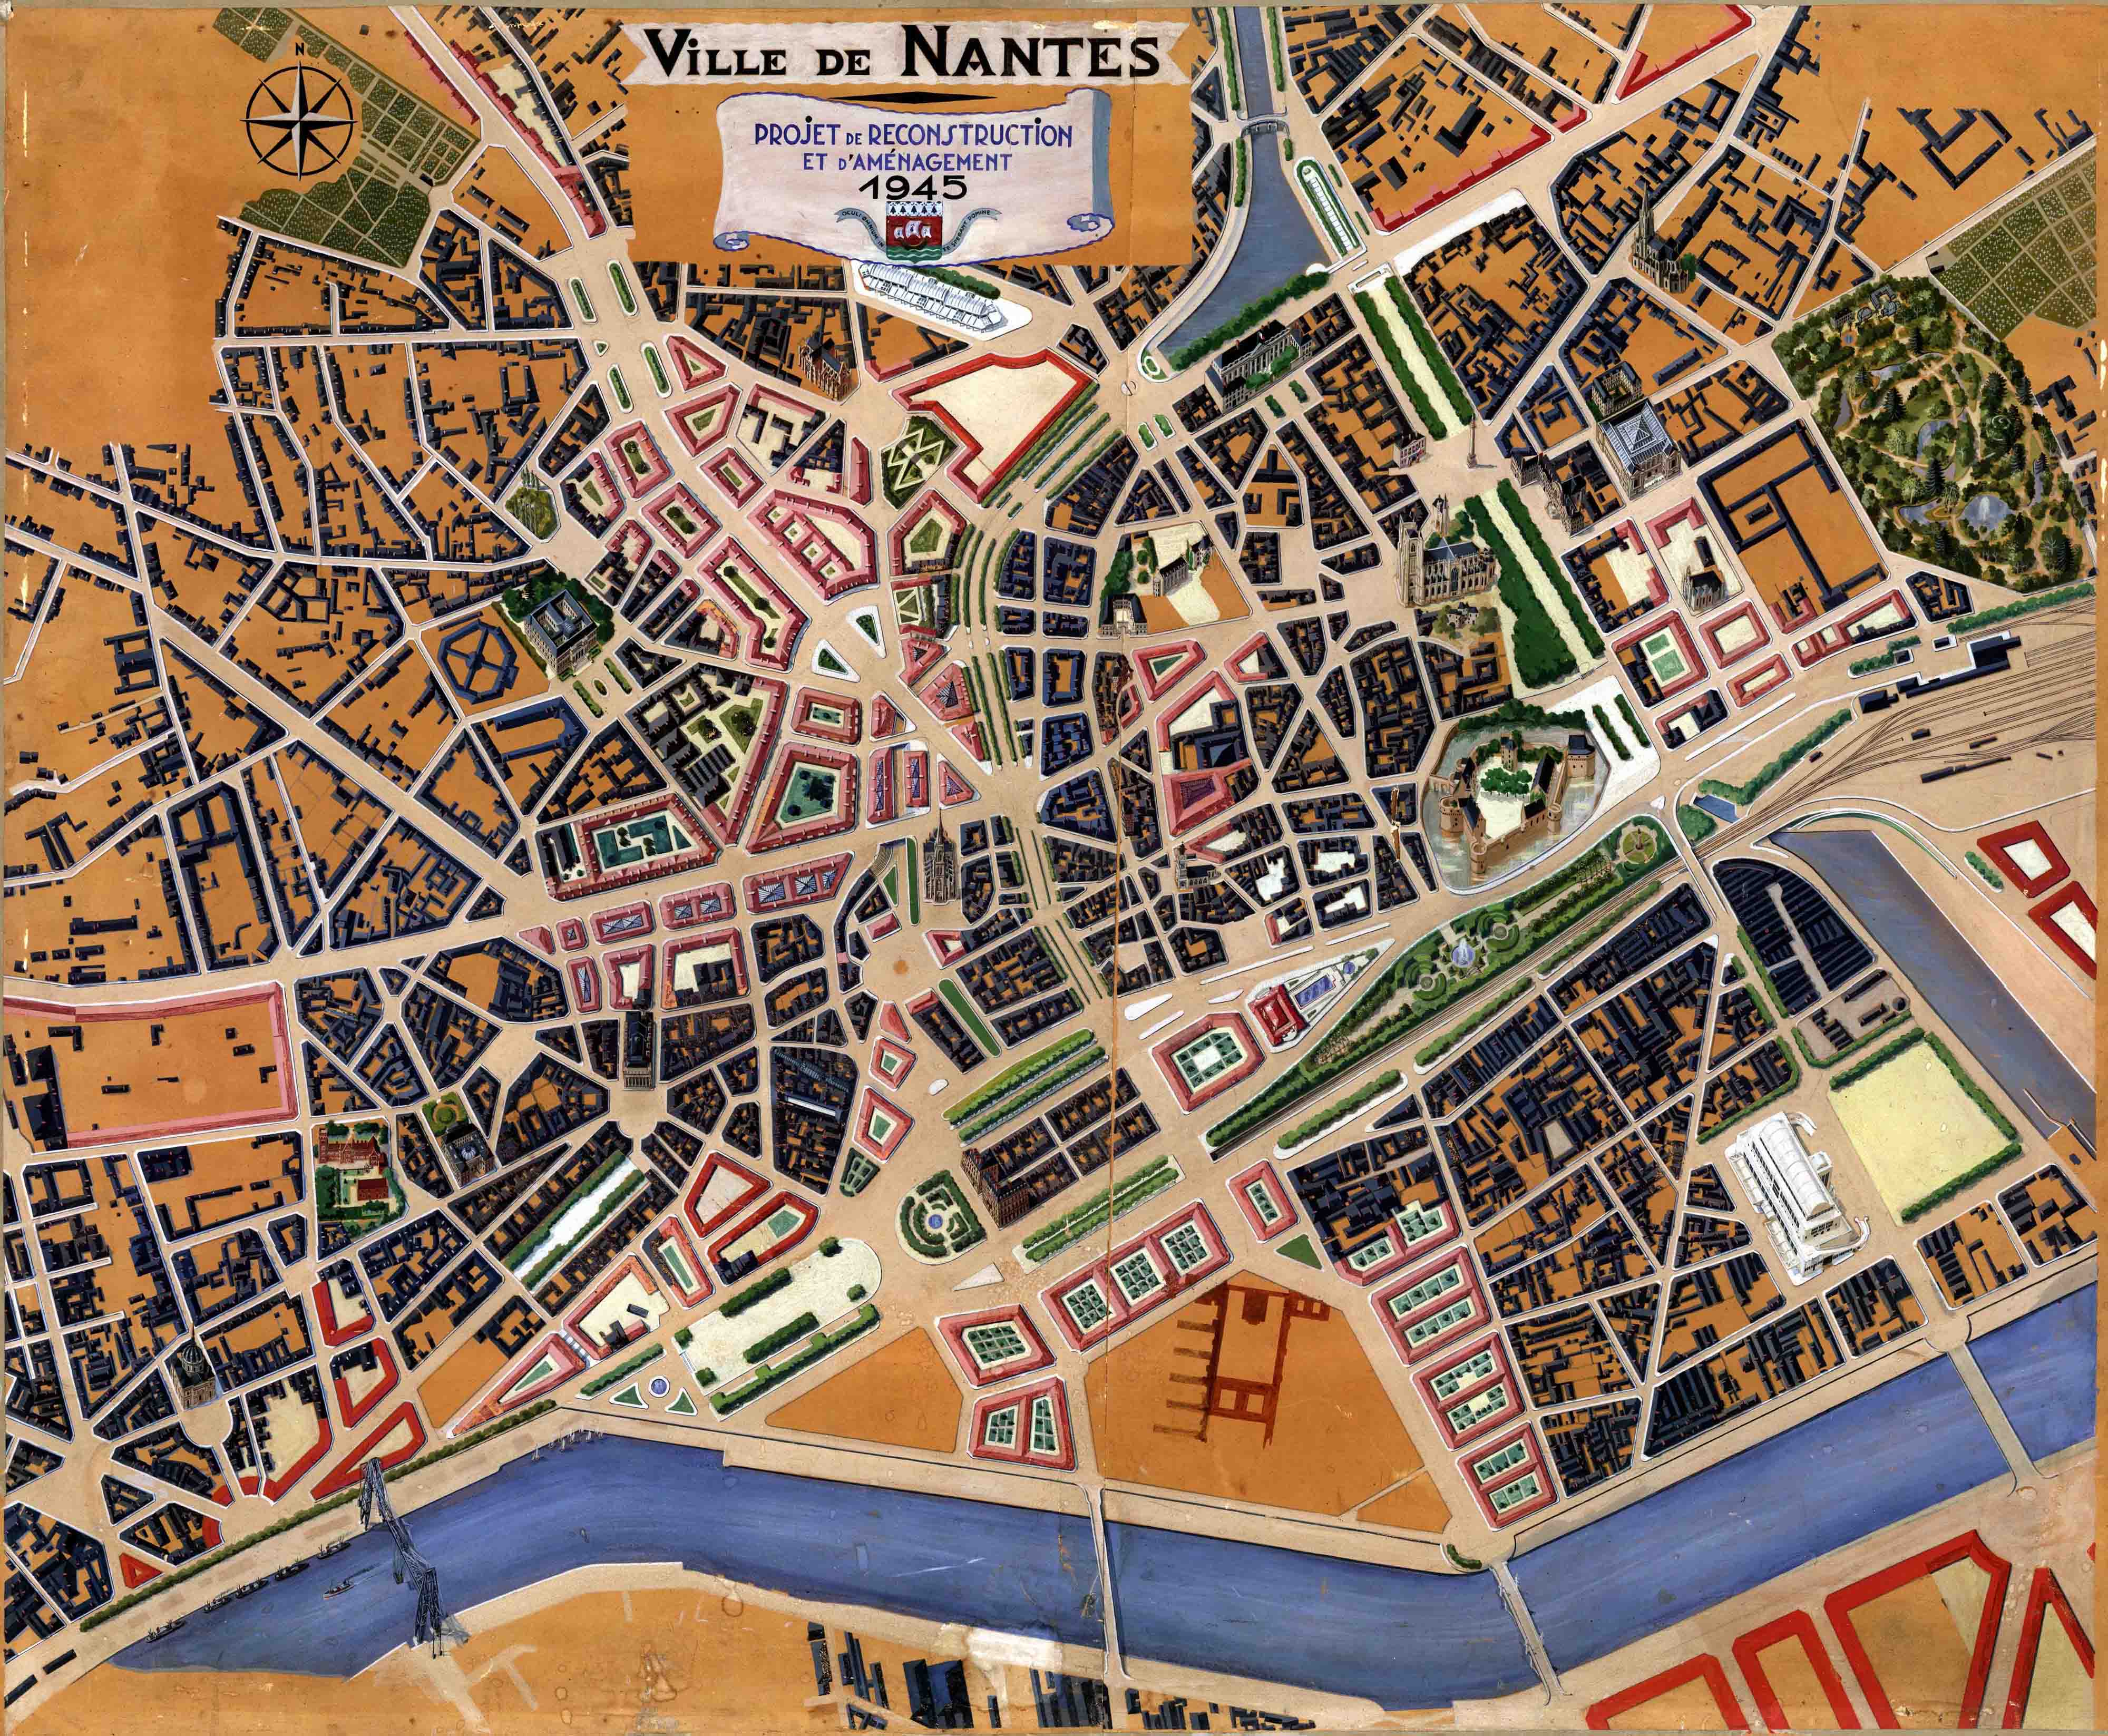 Projet de reconstruction et d'aménagement de la ville de Nantes, 1945 (1Fi972)